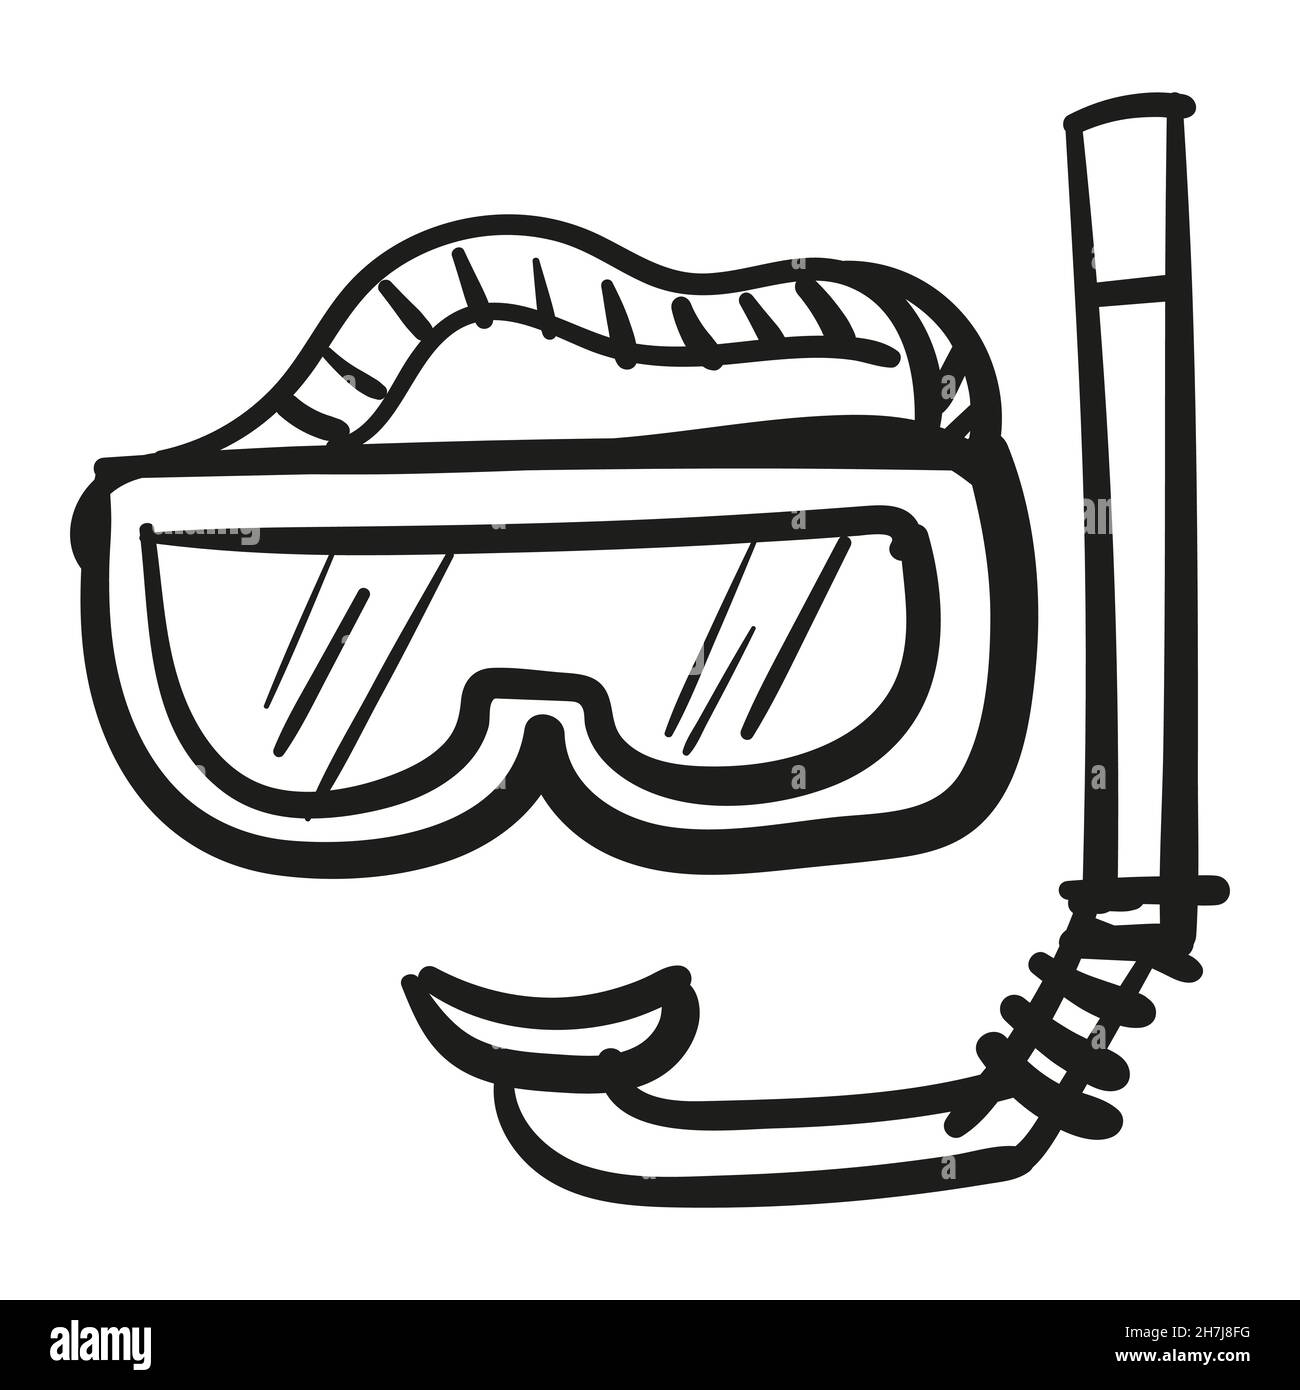 Icona maschera scuba disegnata a mano in stile doodle isolato. Illustrazione Vettoriale